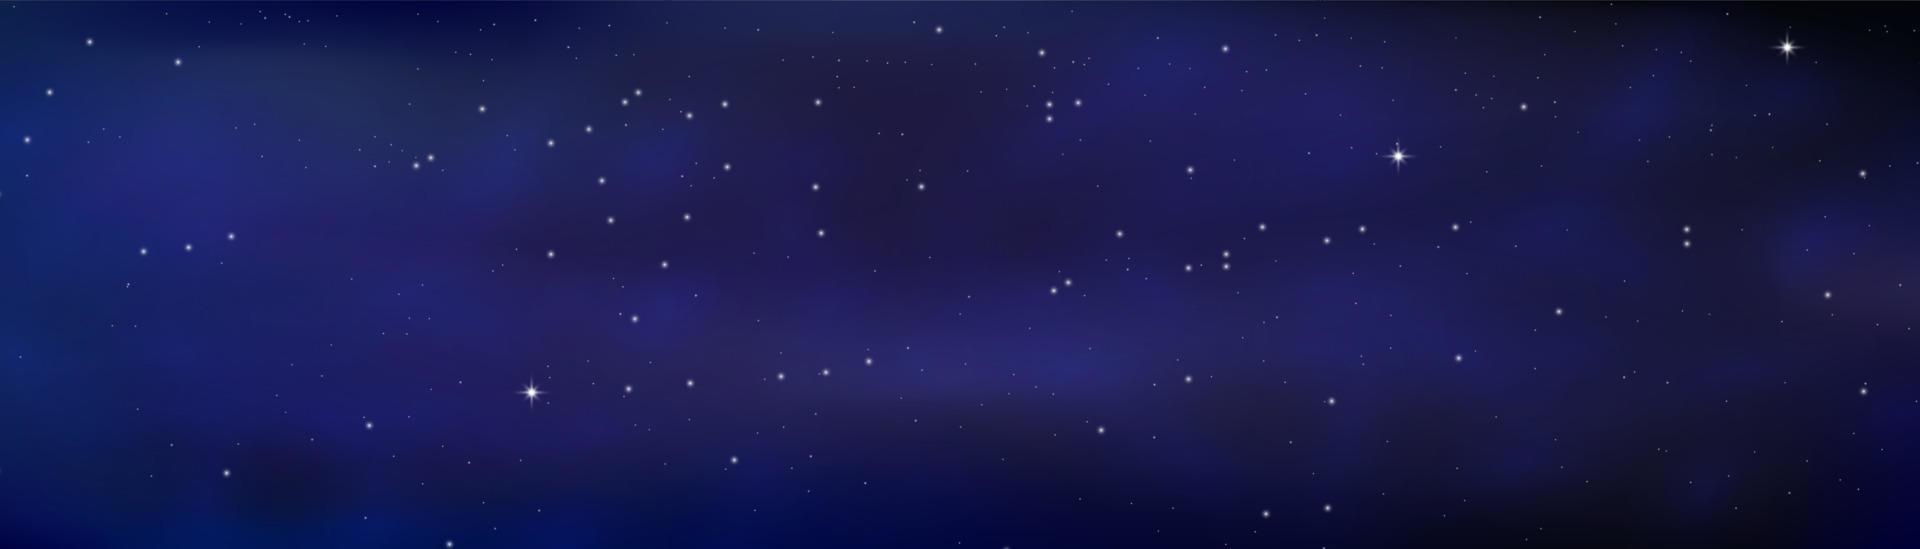 nachtleuchtender sternenhimmel, blauer raumhintergrund mit sternen, raum. schöner Nachthimmel. vektor